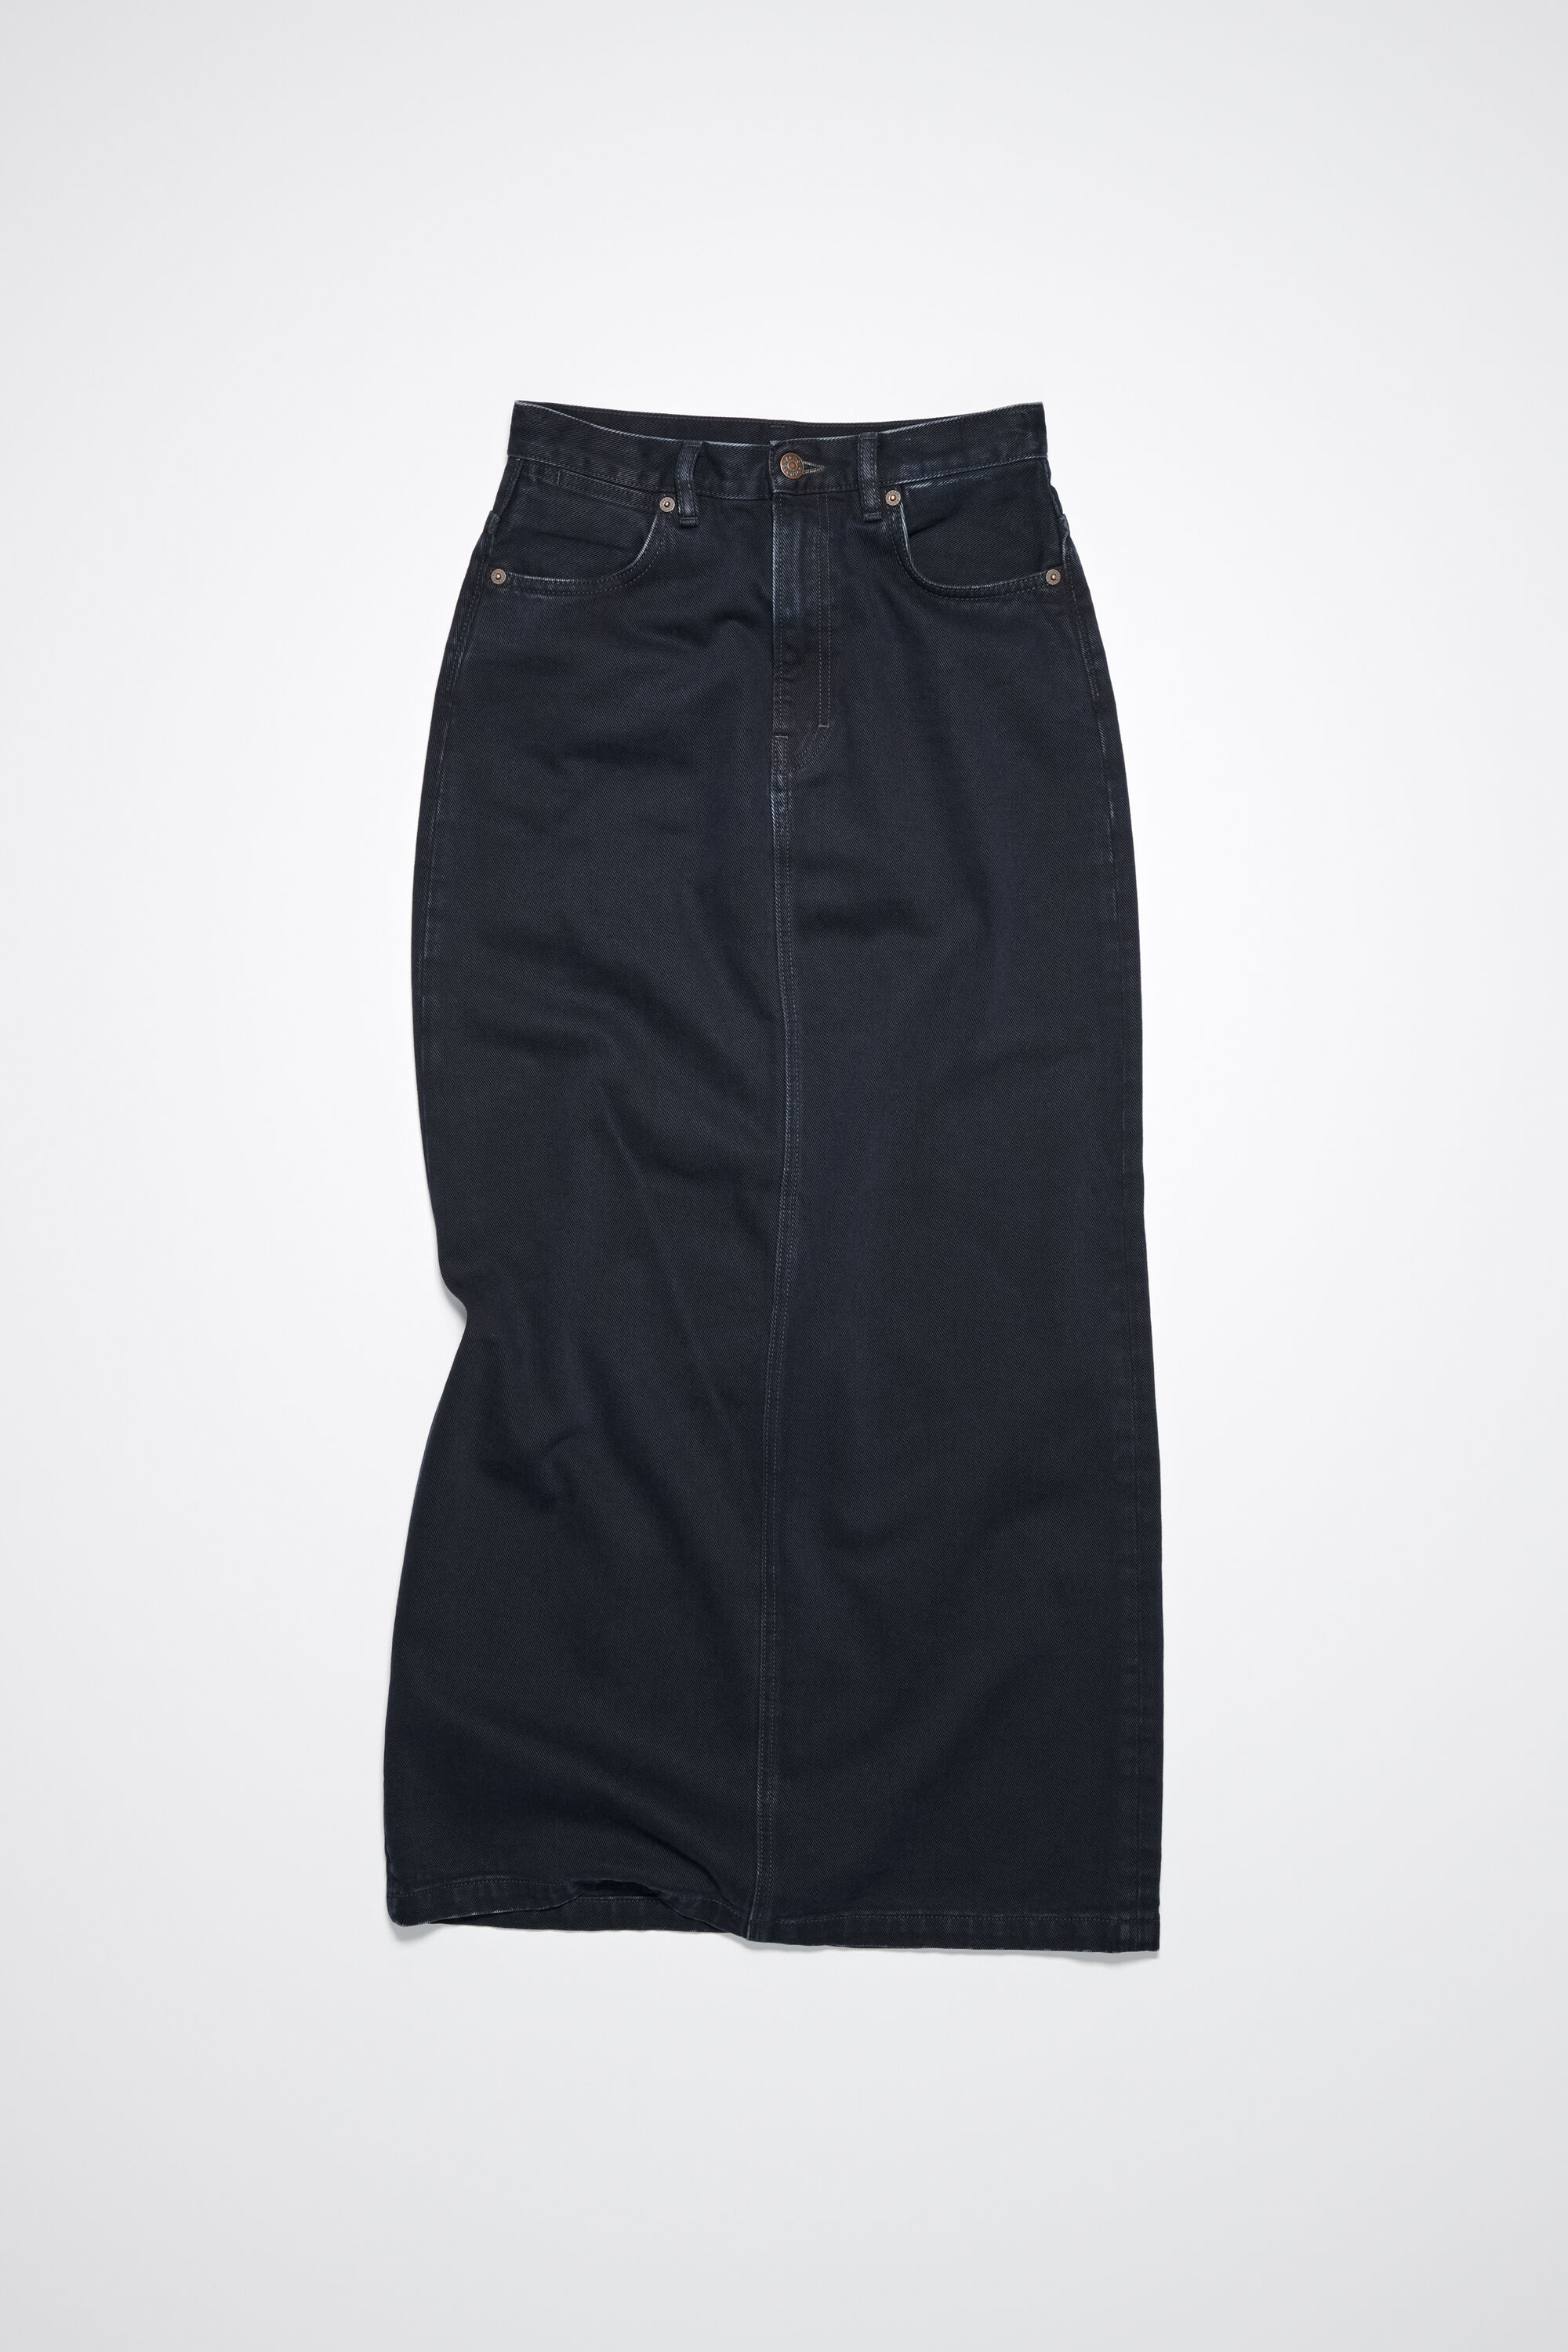 Black denim maxi skirt | Contemporaine | Women's Denim Skirts | Summer |  Simons